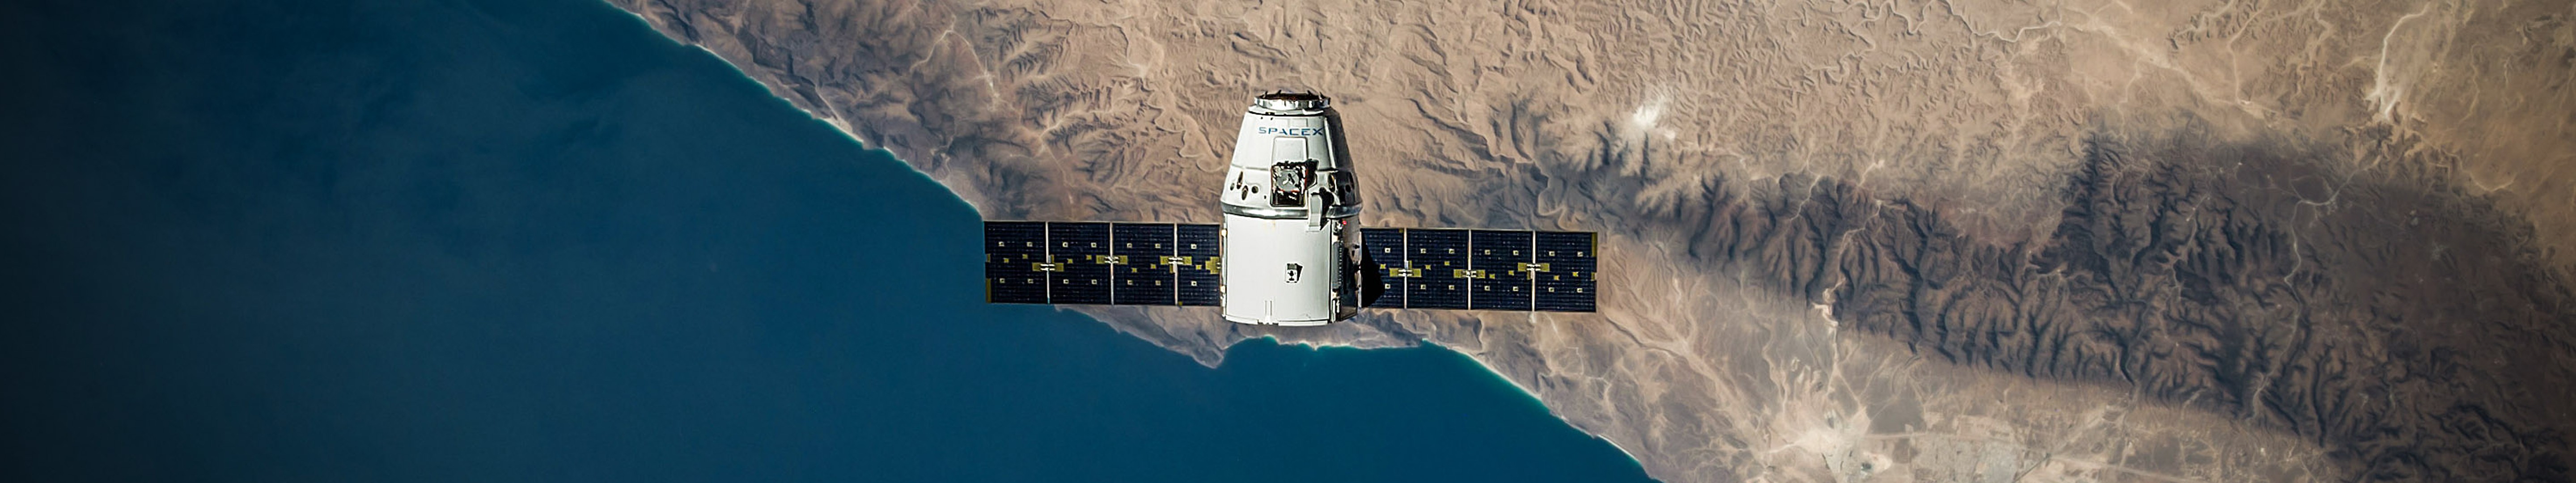 General 5760x1080 satellite space SpaceX Dragon Capsule orbital view